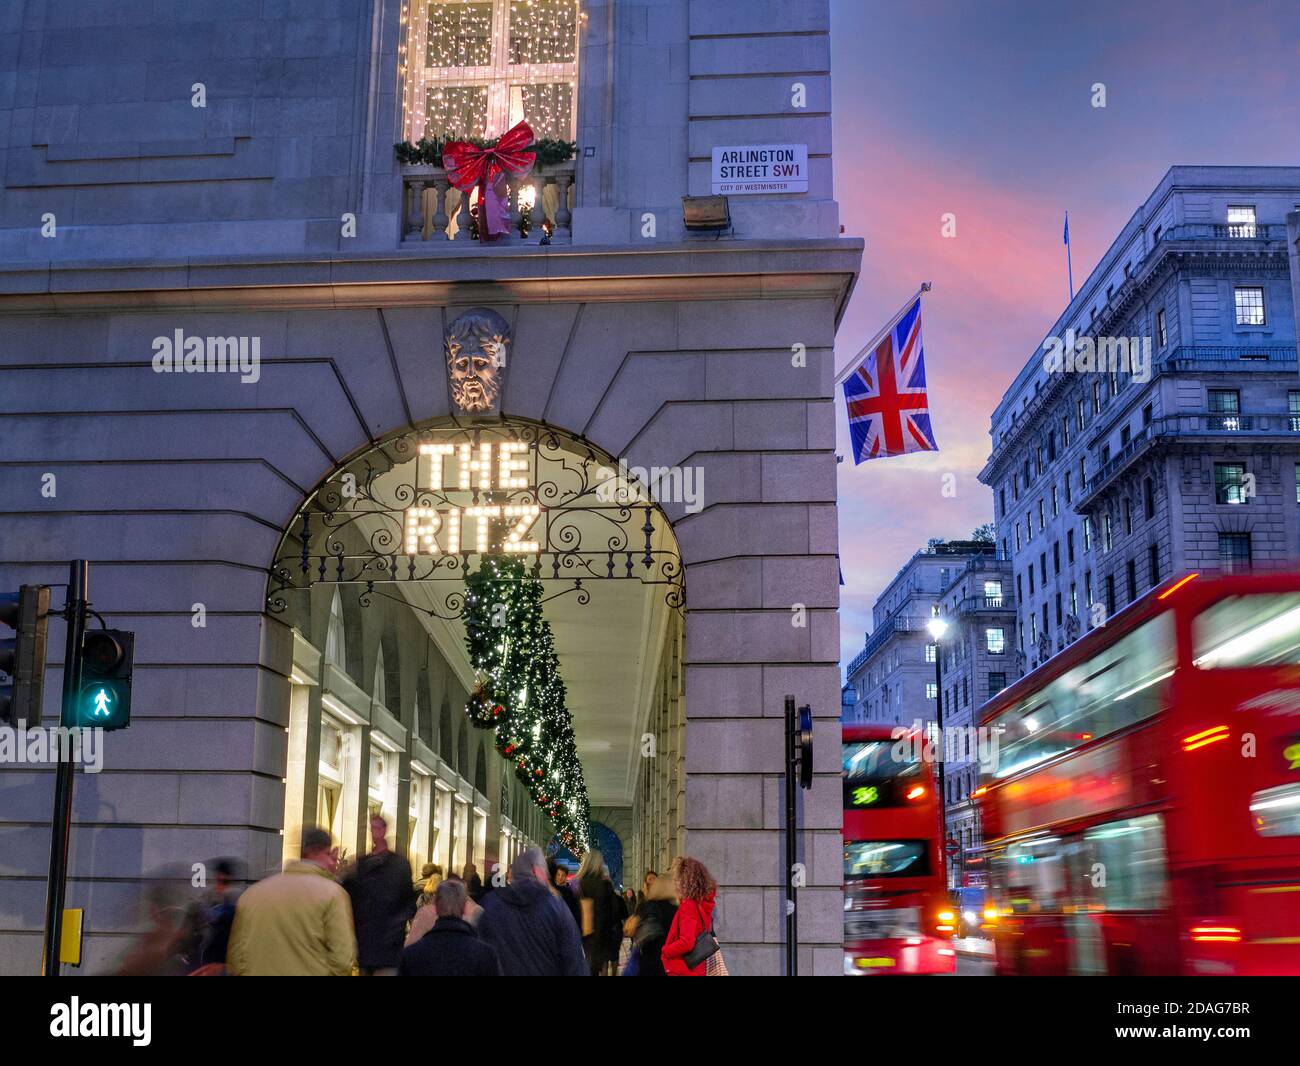 LONDRA NATALE FOLLA il Ritz Hotel in inverno intensa stagione di festa, sera luci notturne ‘il Ritz' segno illuminato, con una bandiera Union Jack, gli acquirenti e il passaggio blurred Londra autobus Arlington Street Piccadilly Londra UK Foto Stock